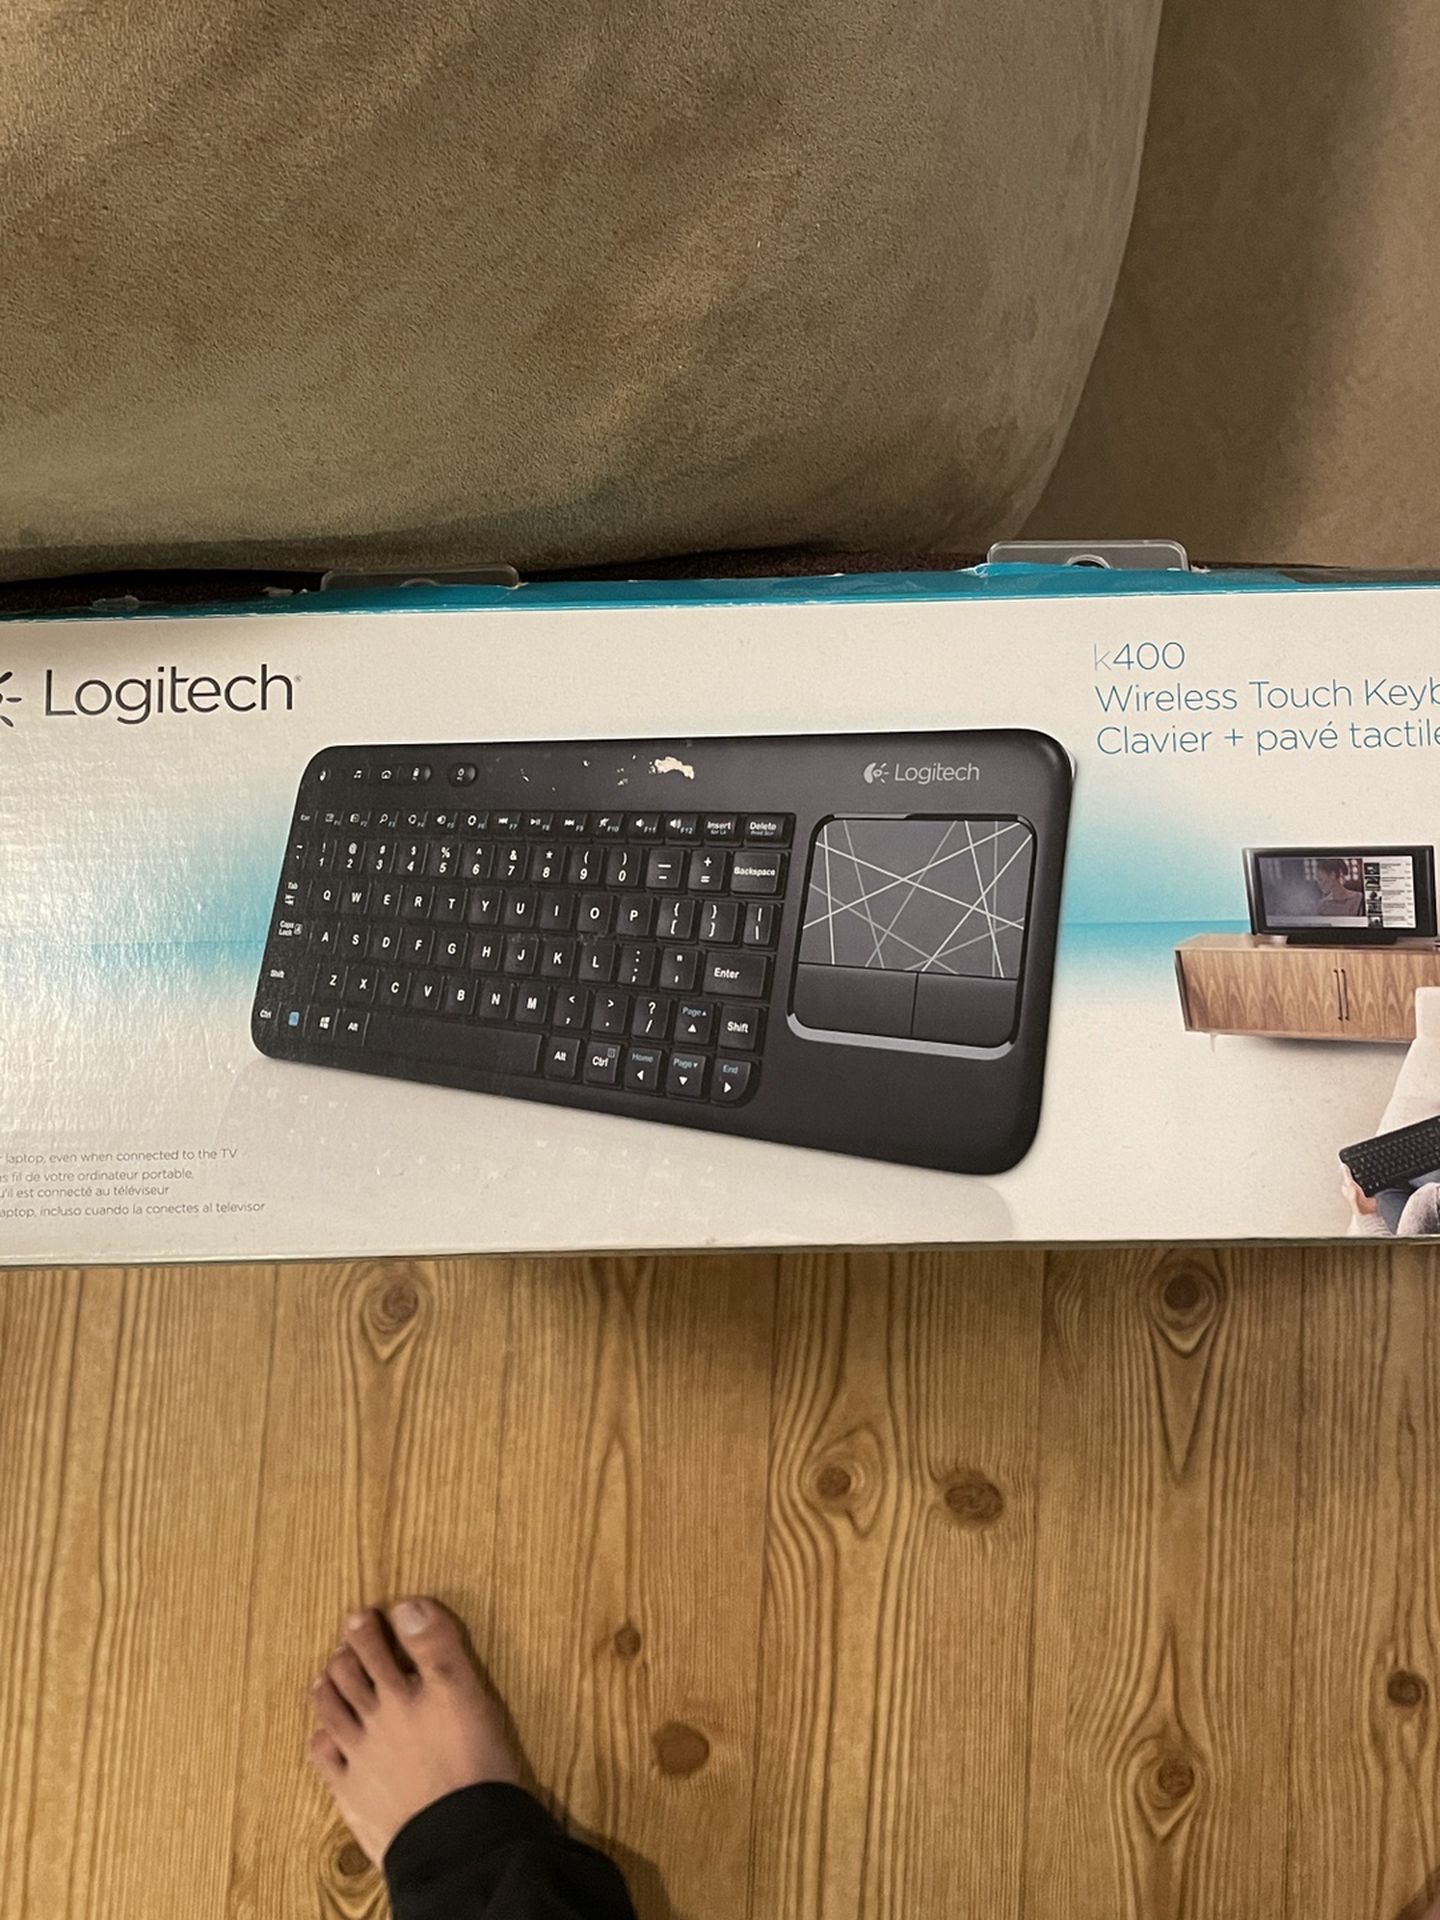 Logitech Wireless Keyboard + Mouse